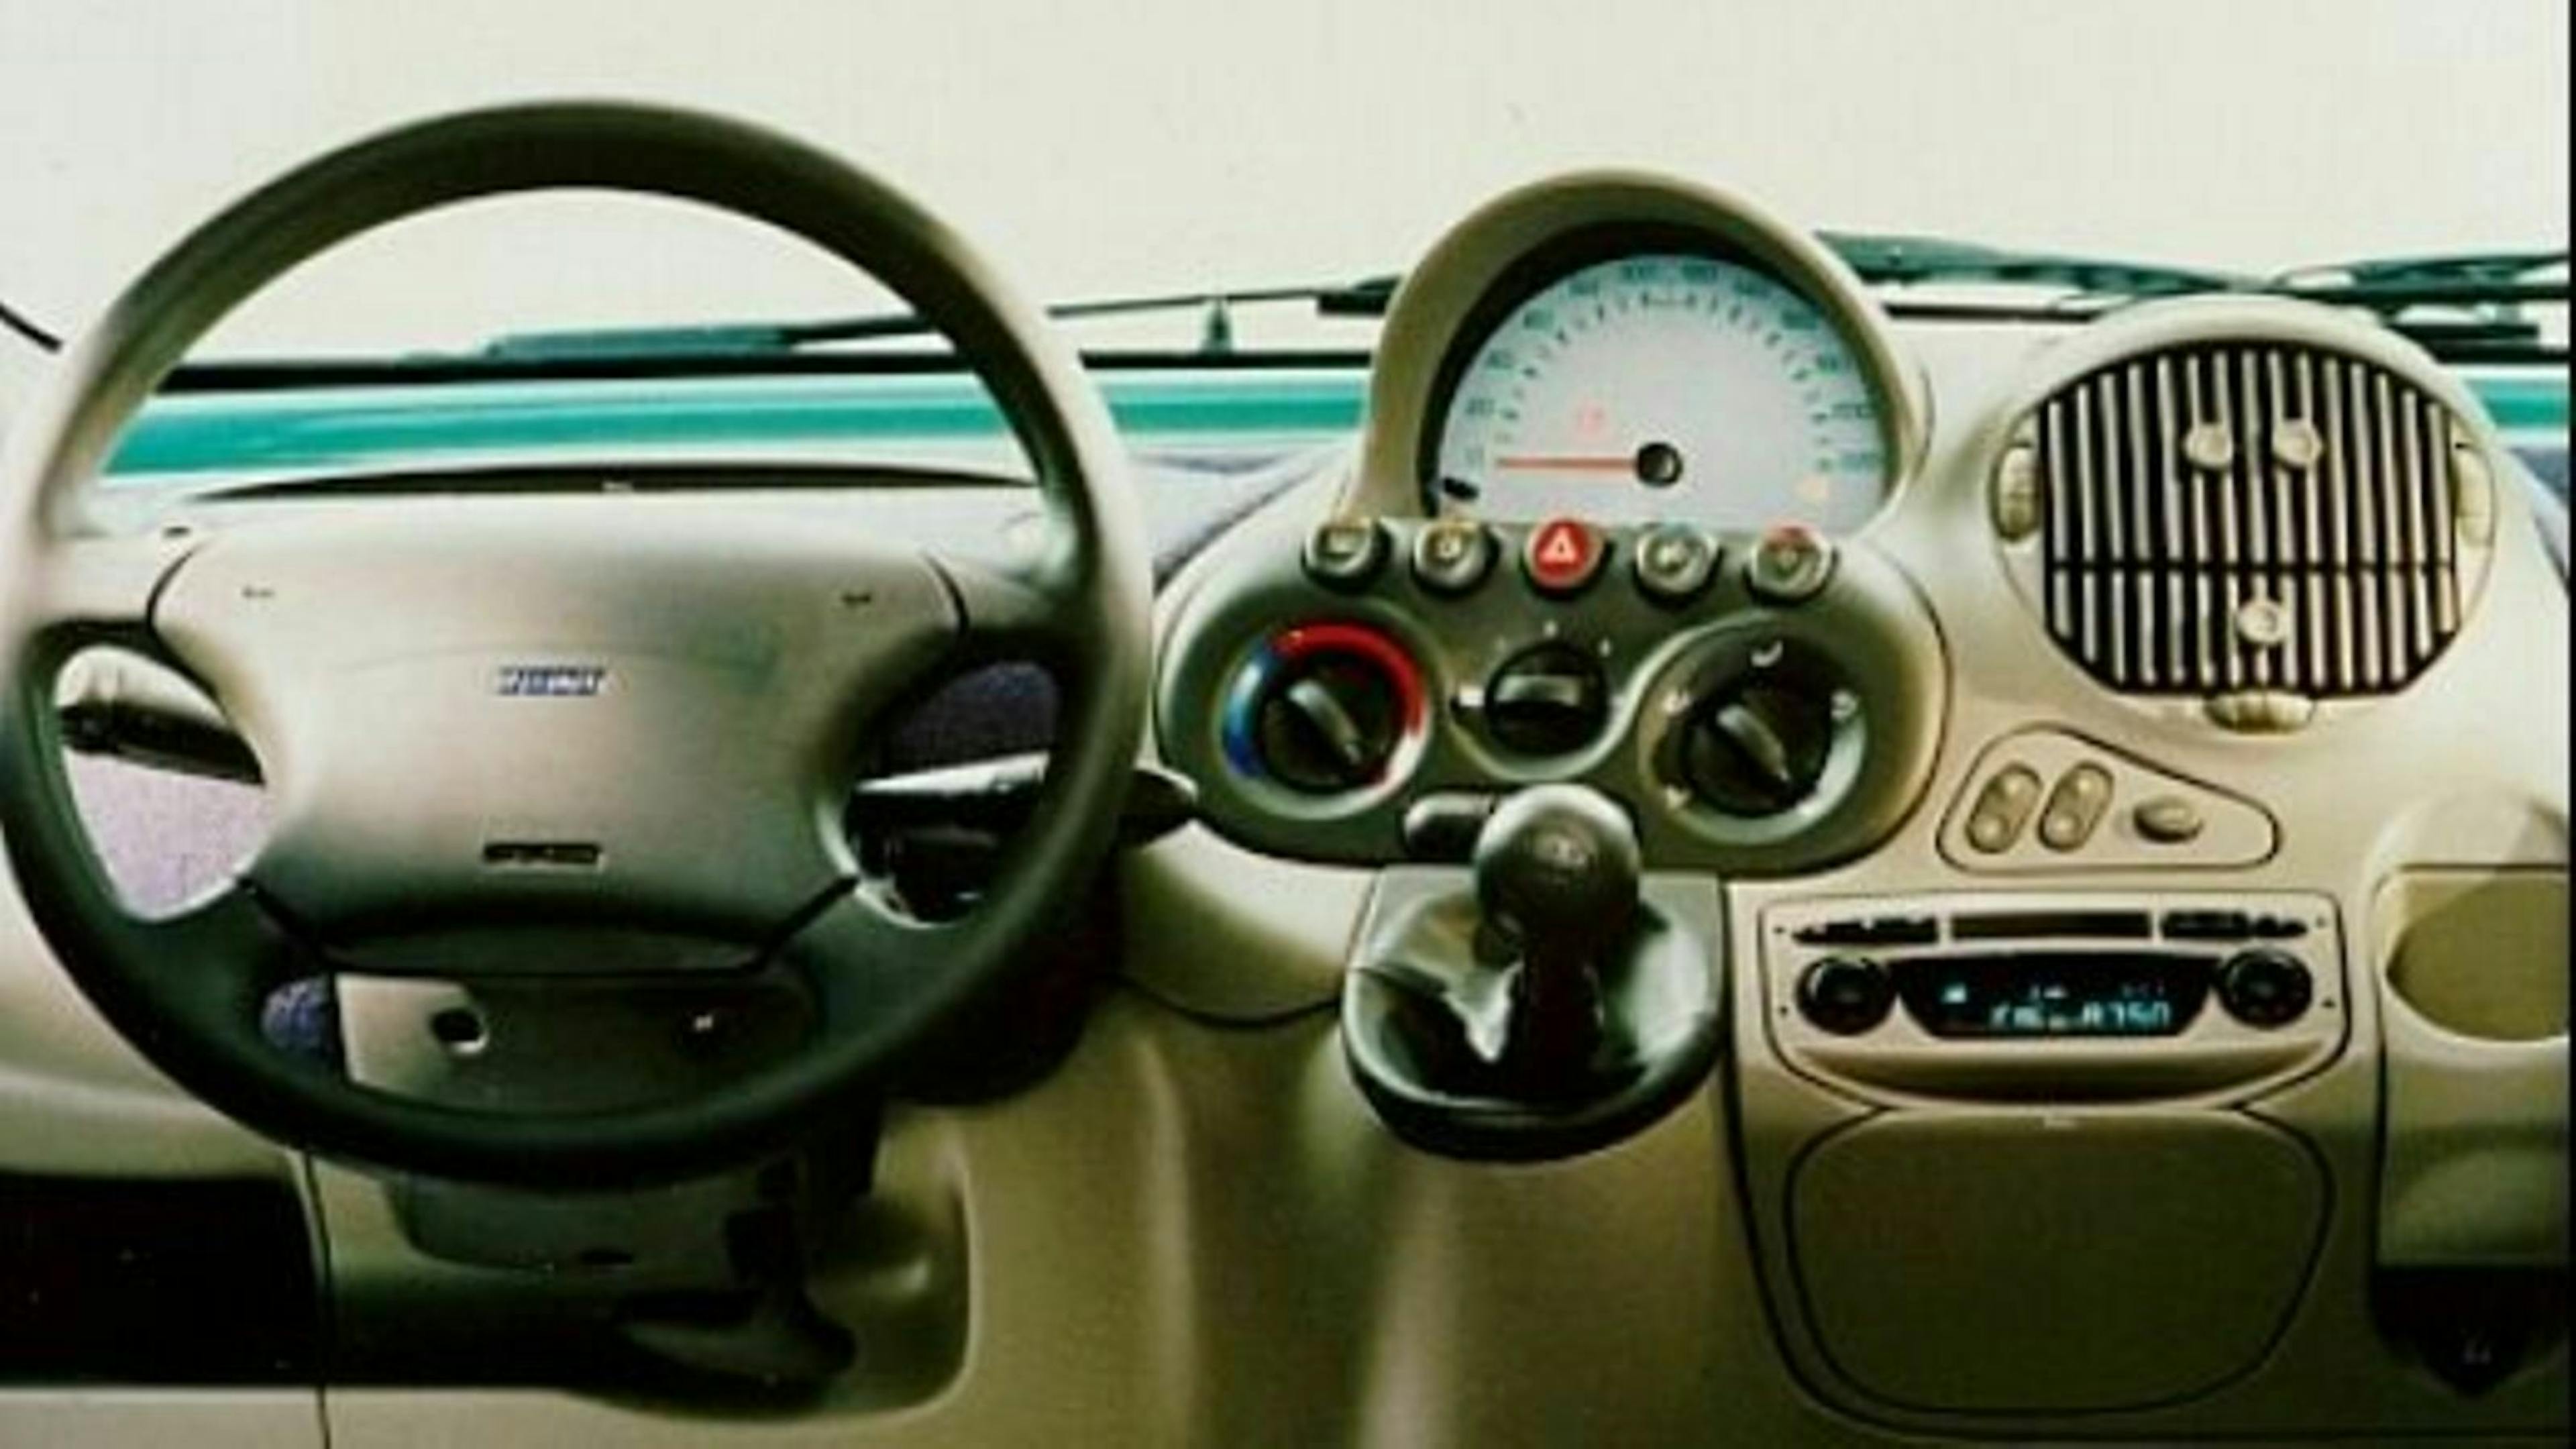 Zu sehen ist das Amarturenbrett des Fiat Multipla. Das Klappfach vor dem Fahrersitz hat eine immense Größe